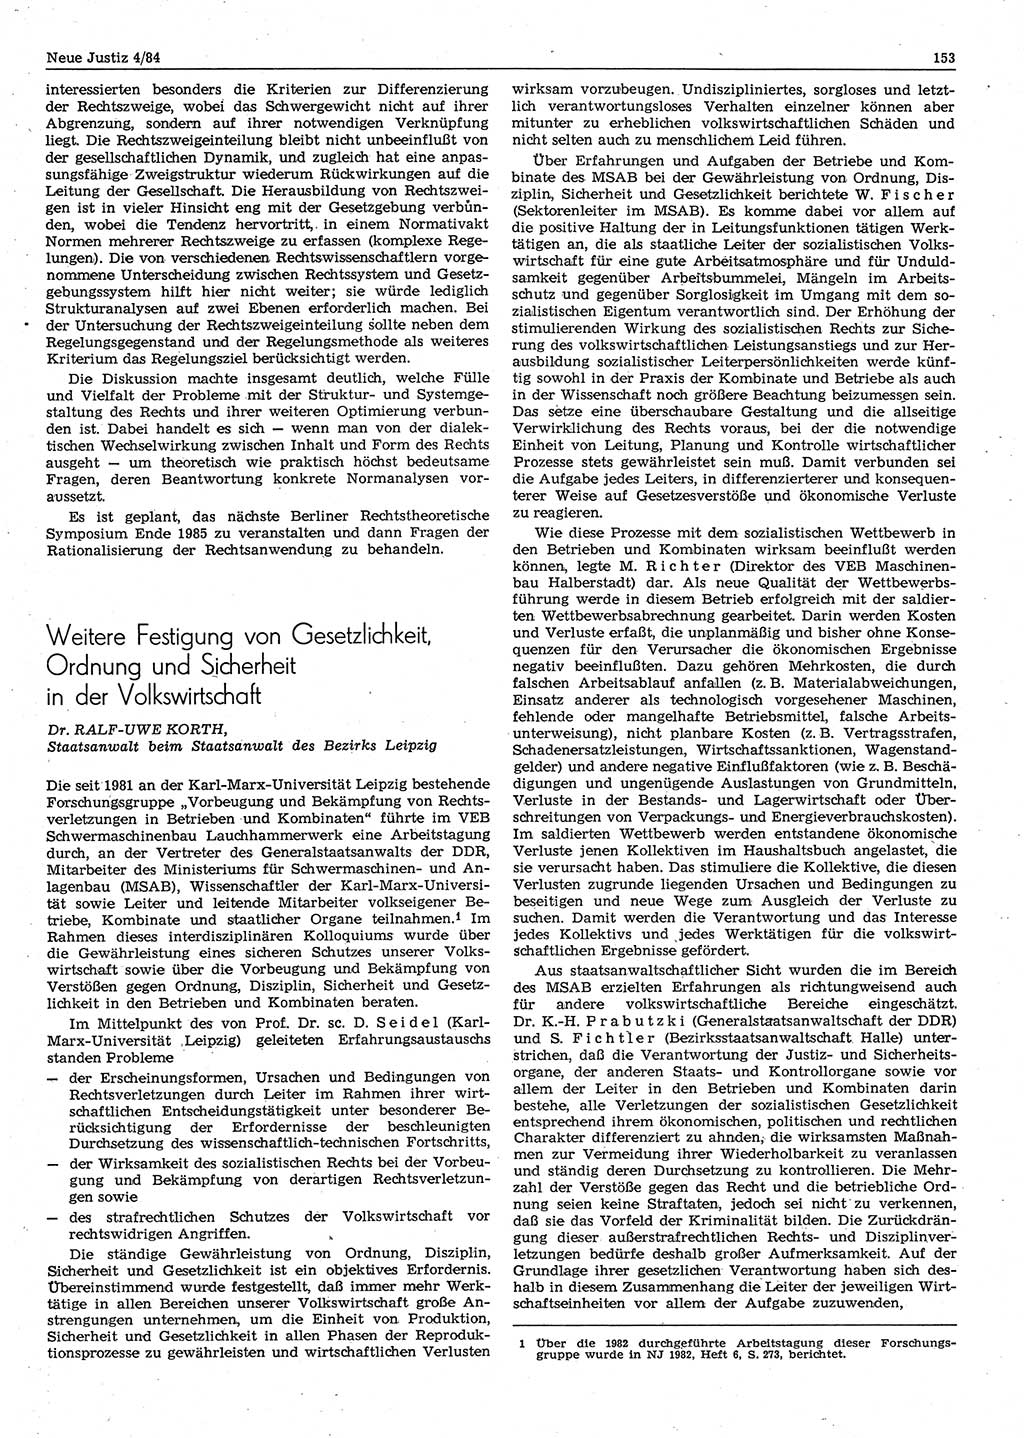 Neue Justiz (NJ), Zeitschrift für sozialistisches Recht und Gesetzlichkeit [Deutsche Demokratische Republik (DDR)], 38. Jahrgang 1984, Seite 153 (NJ DDR 1984, S. 153)